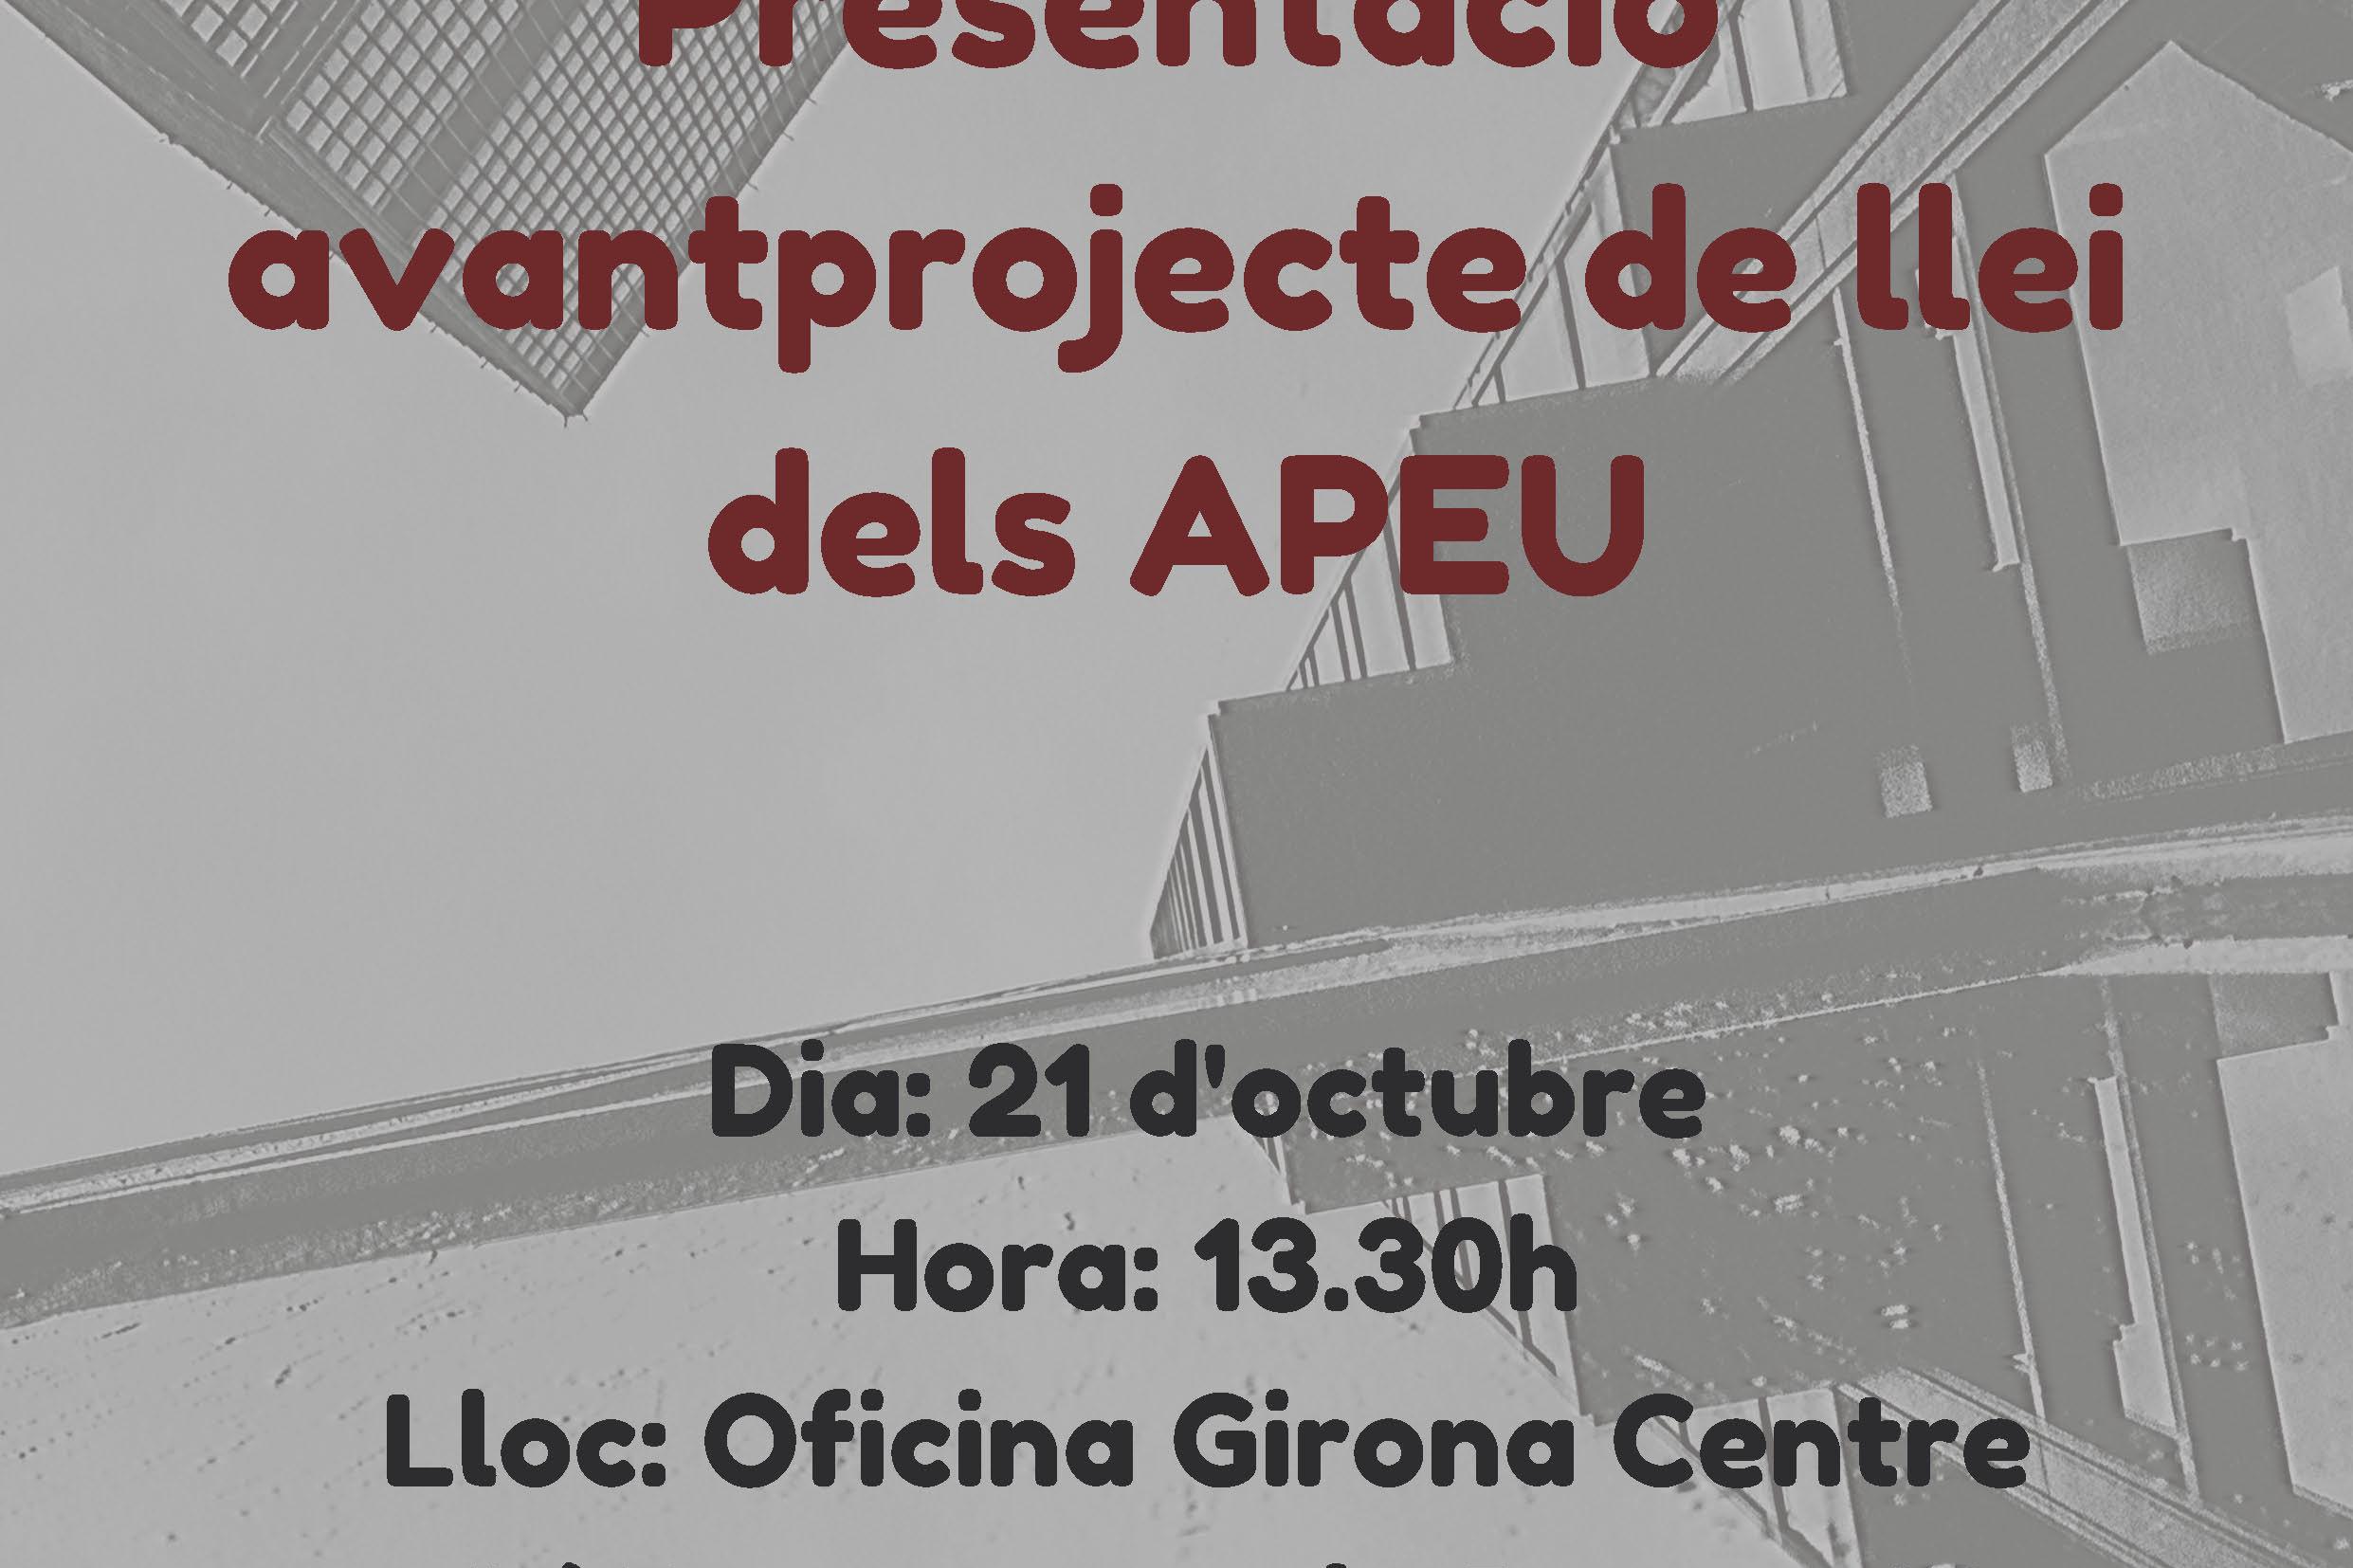 Jornada de presentació de l'avantprojecte de llei dels APEU als establiments associats a Girona Centre